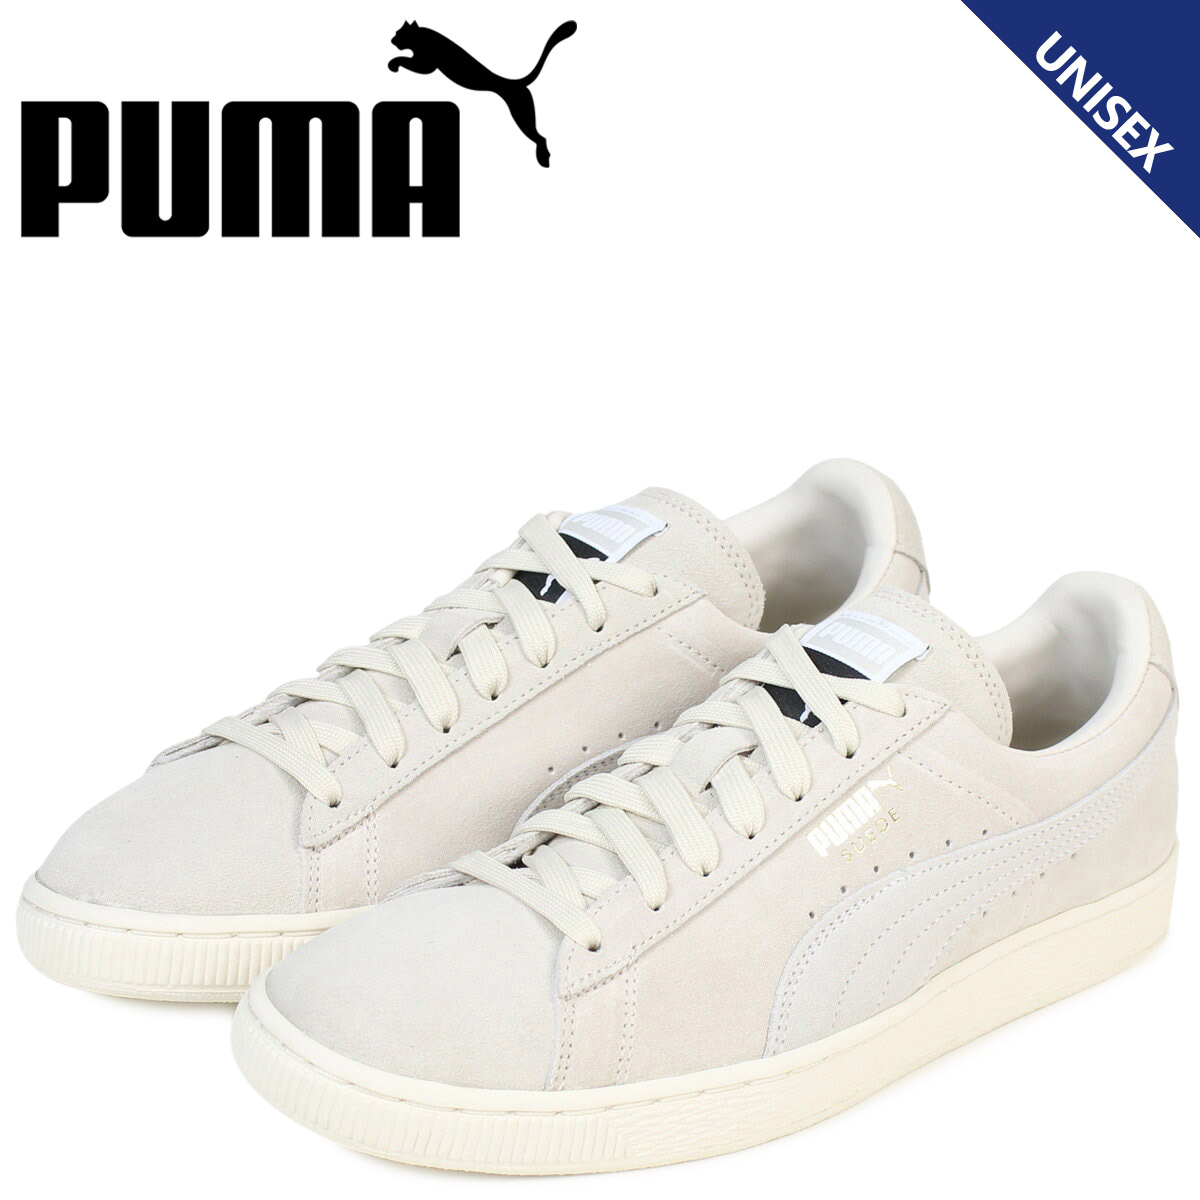 puma online shop